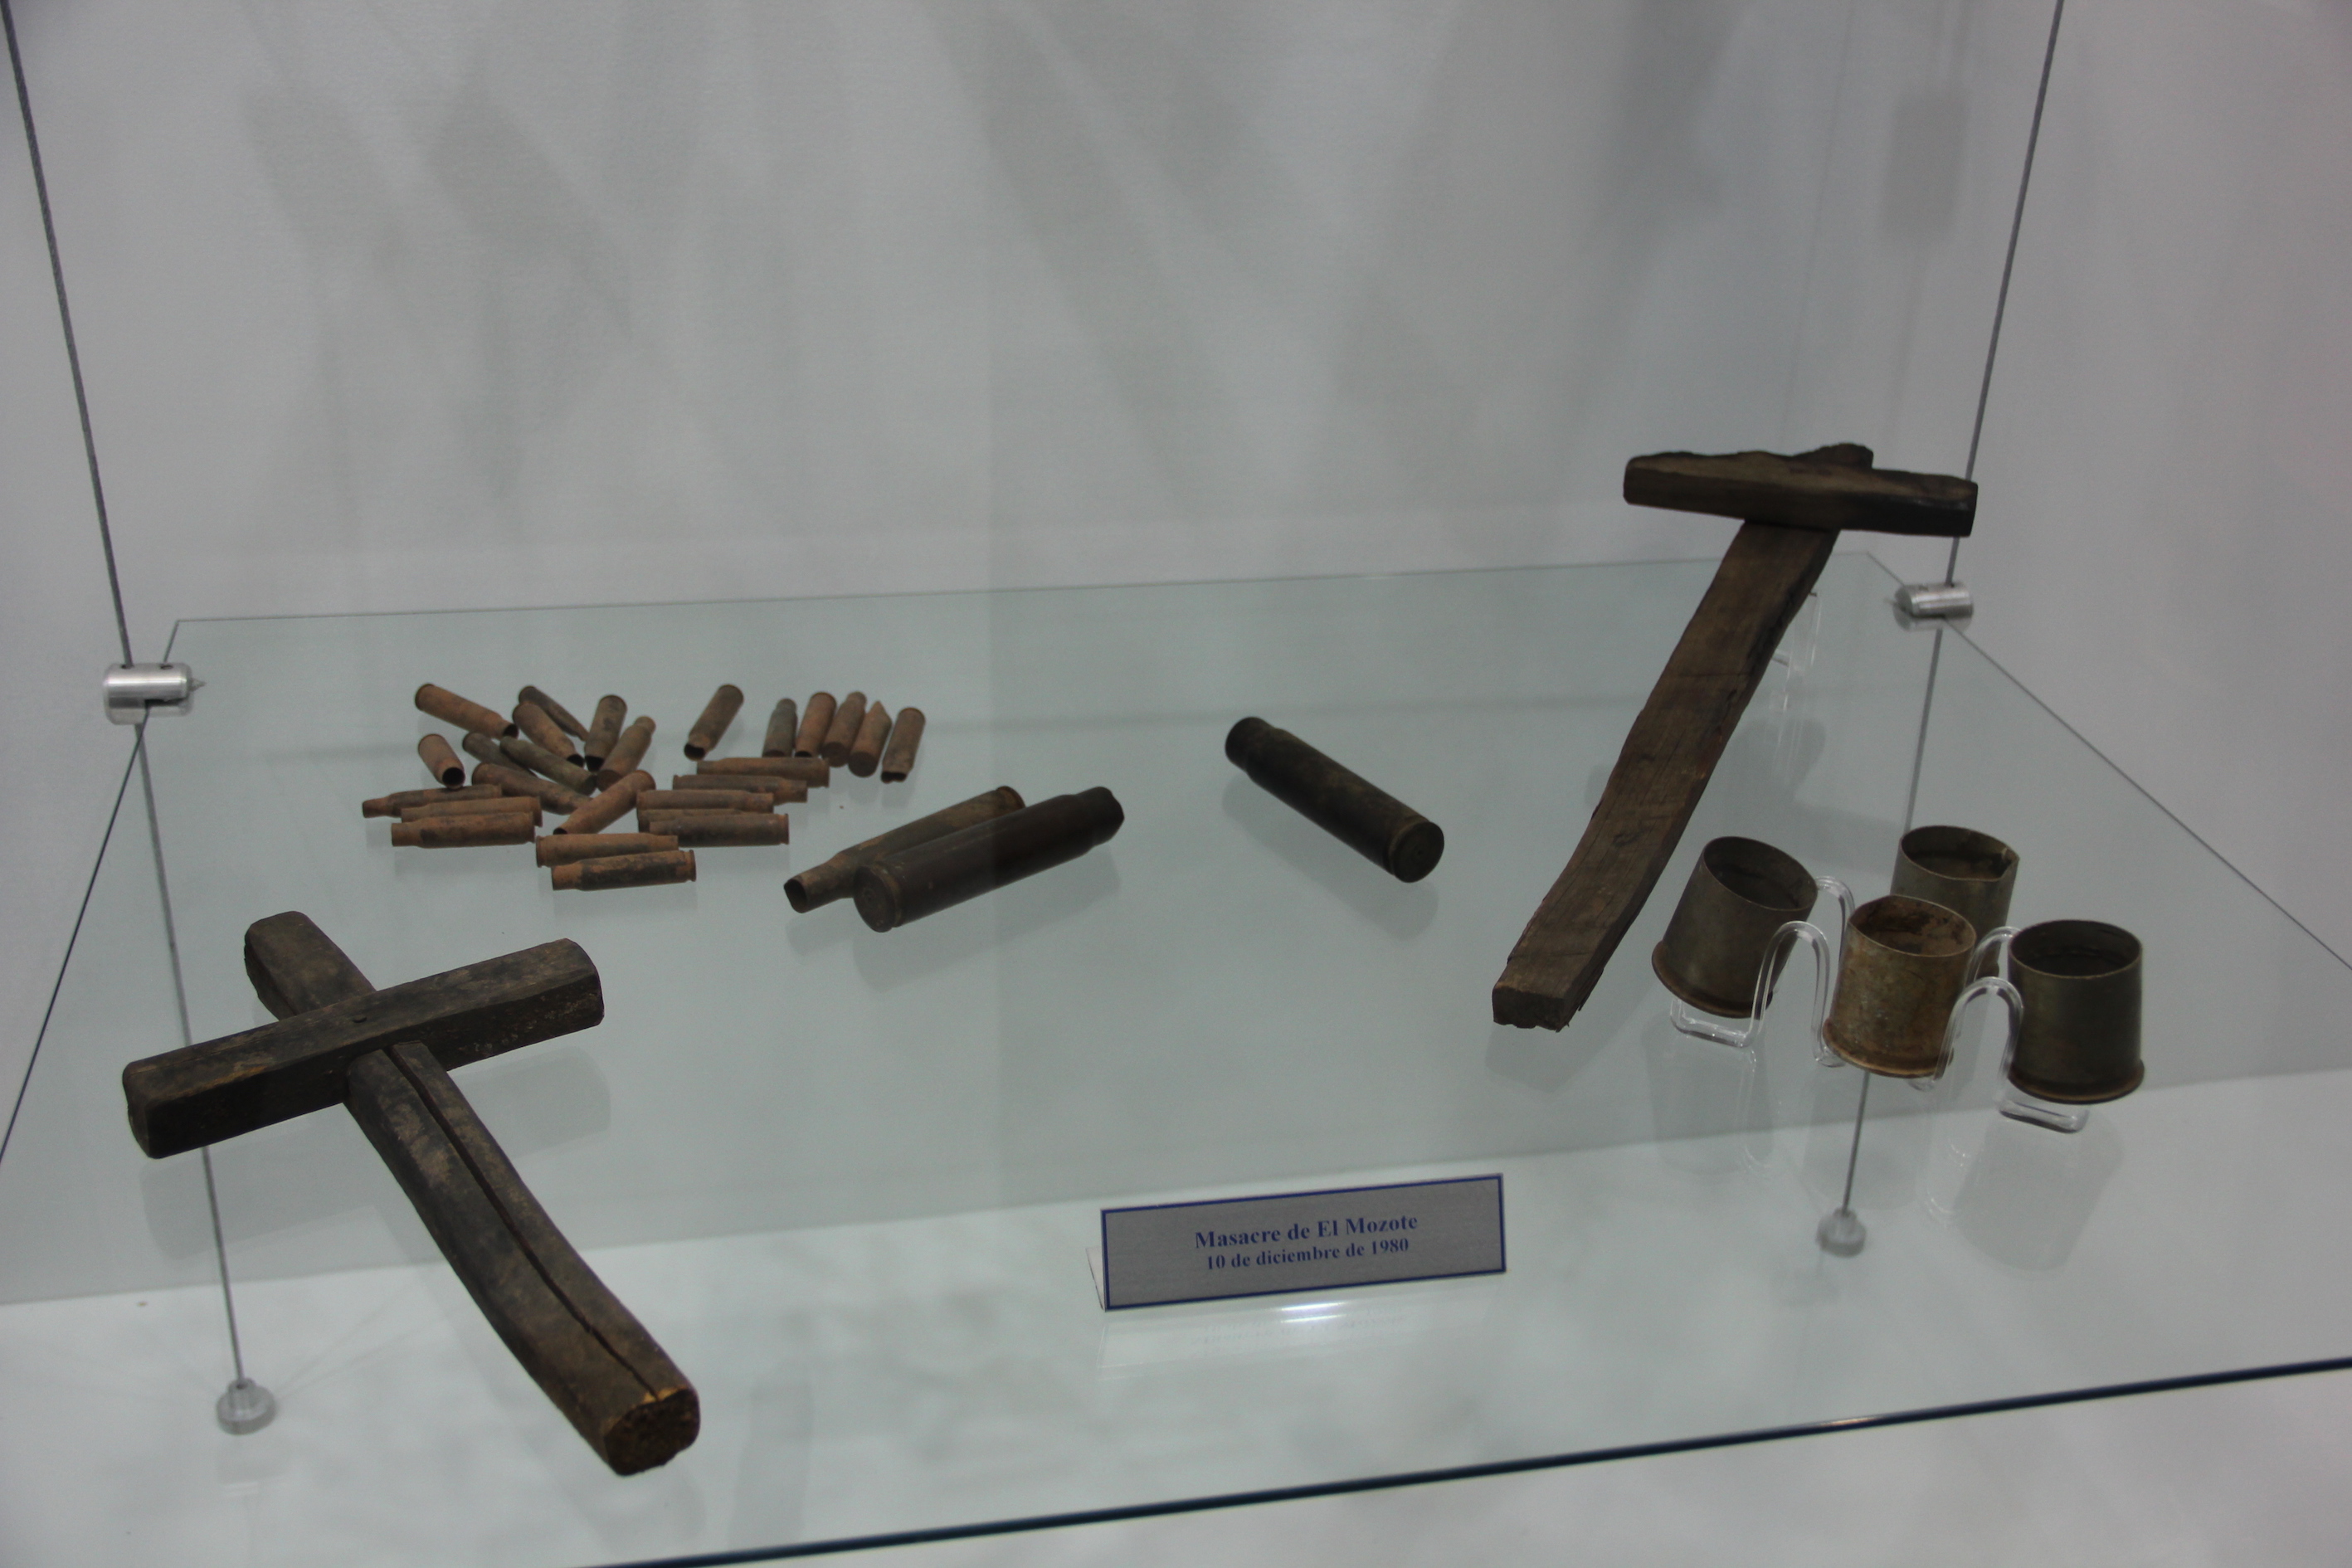 Además se exponen objetos como los encontrados tras la masacre de El Mozote.